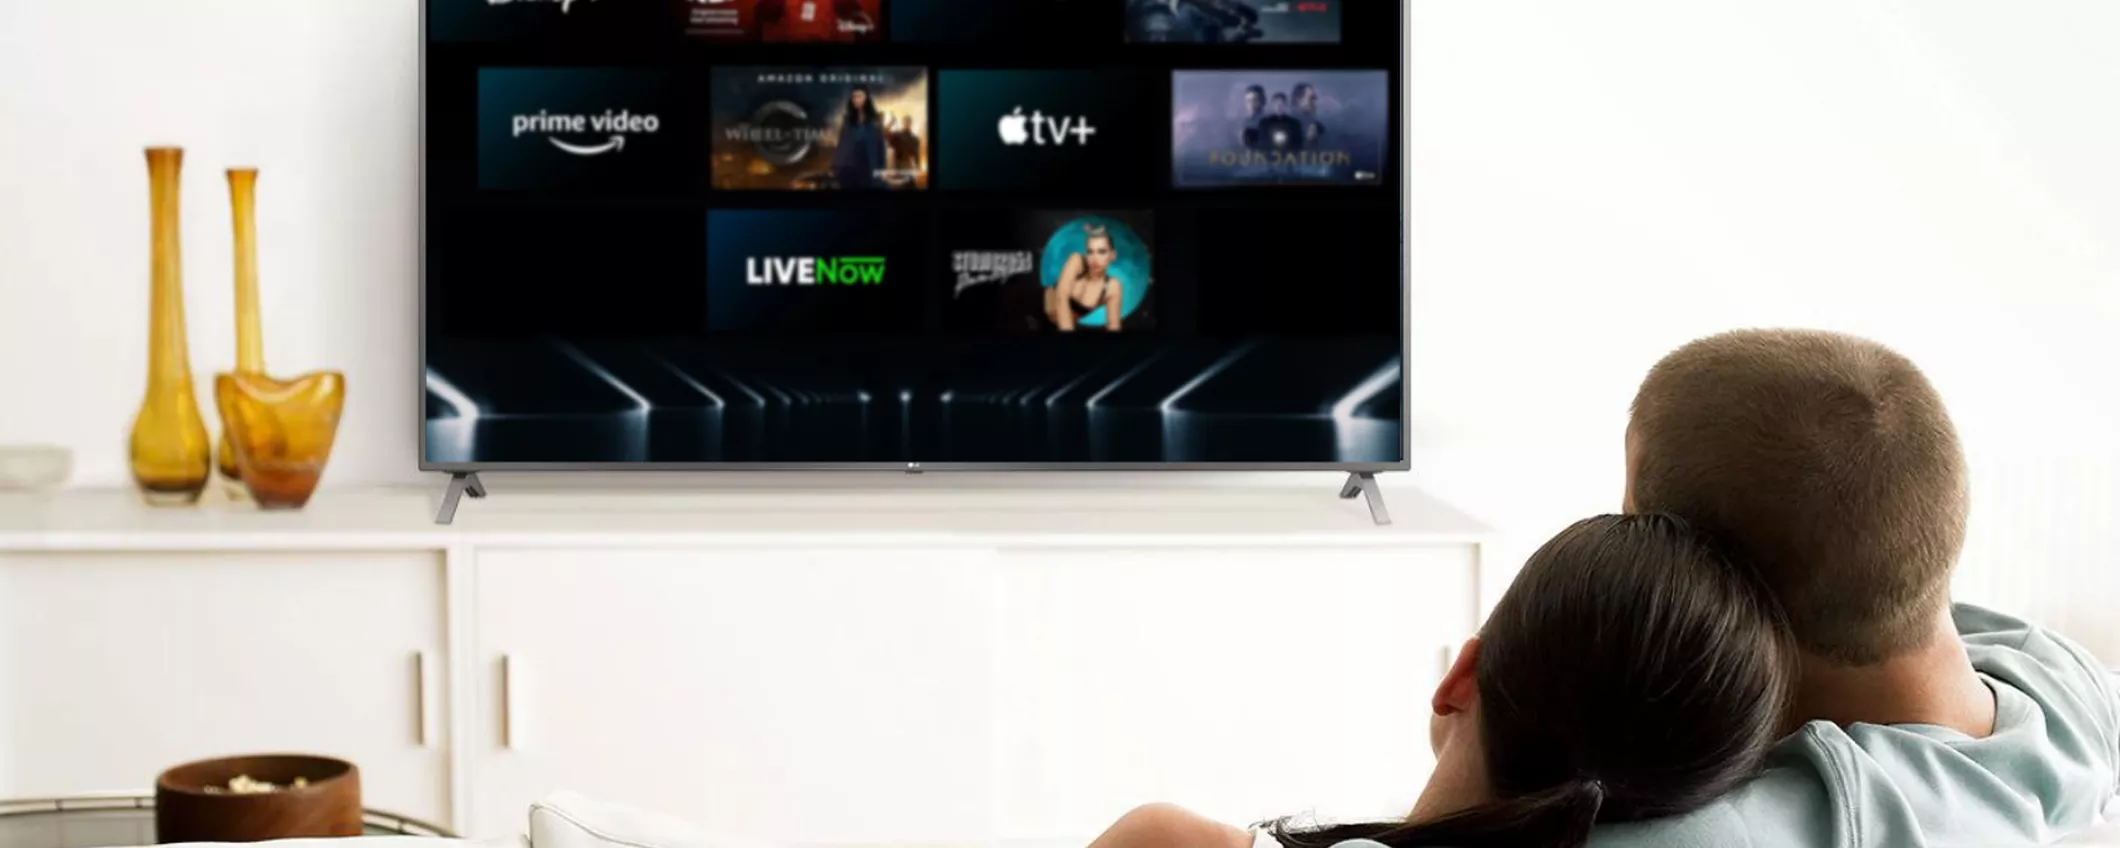 FOLLIA eBay: il sito va in TILT e svende la smart TV LG da 32” a prezzo OUTLET